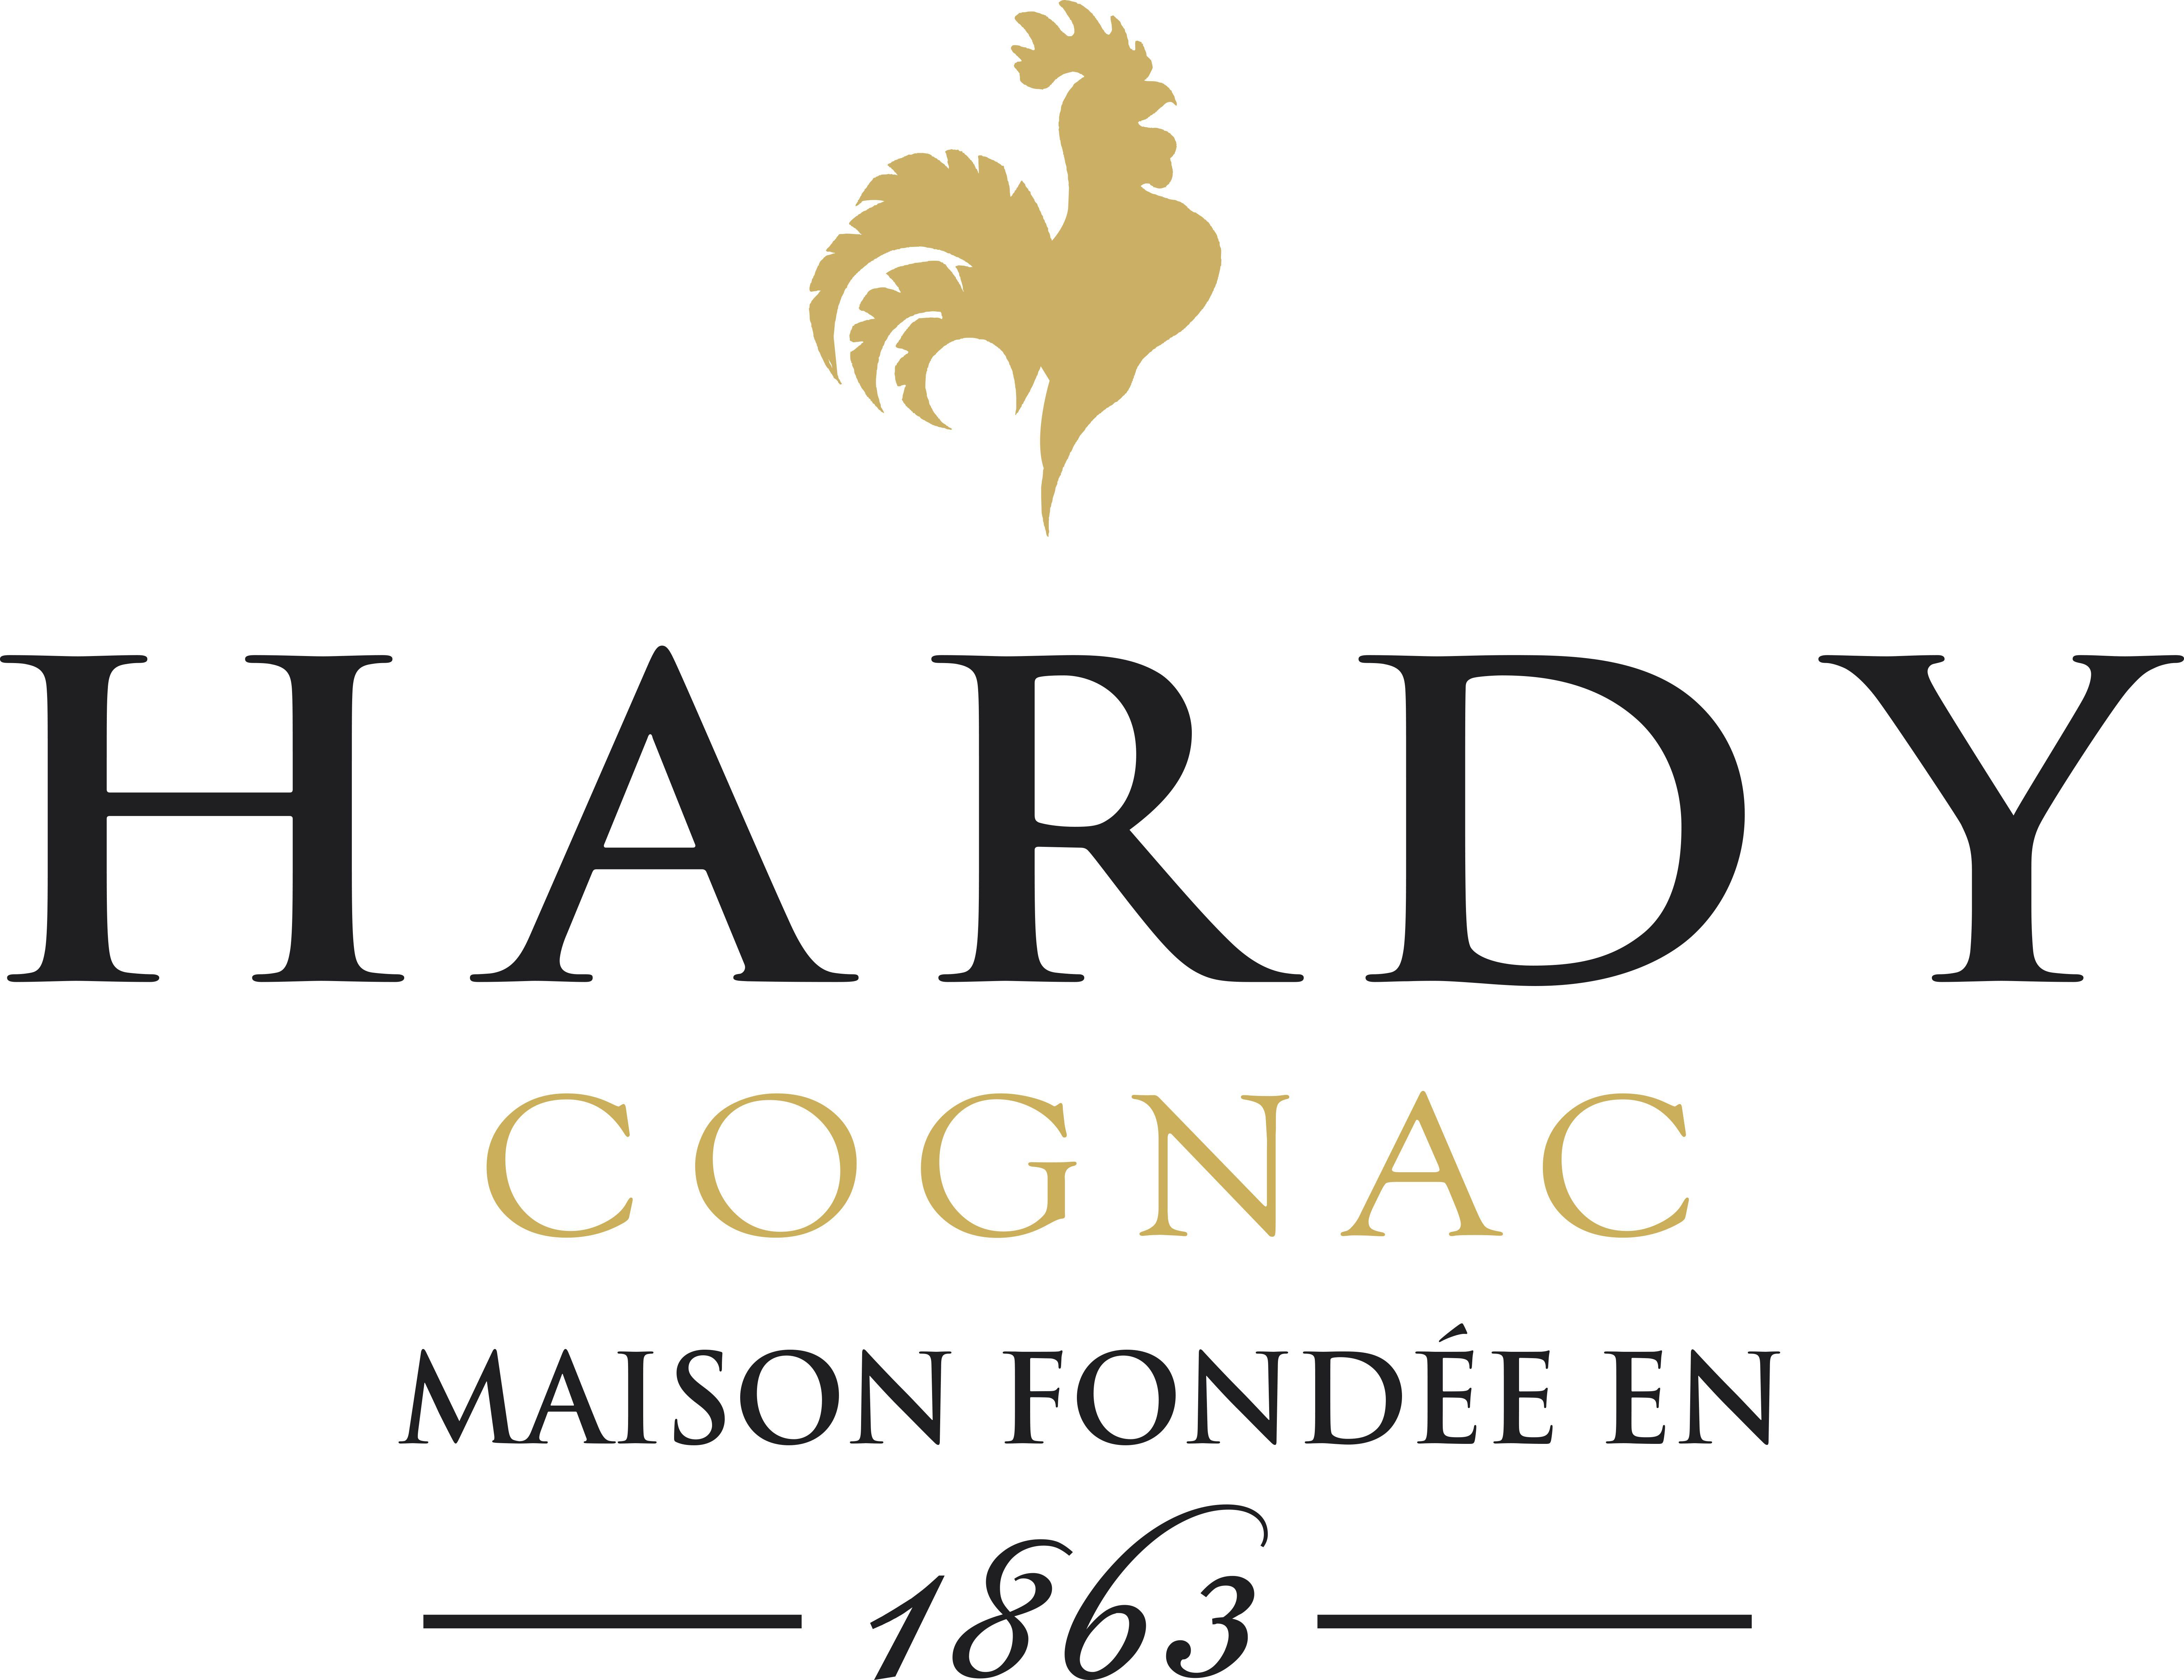 Cognac Logo - Logo Hardy + COGNAC - Alliance Française Mpls/St Paul